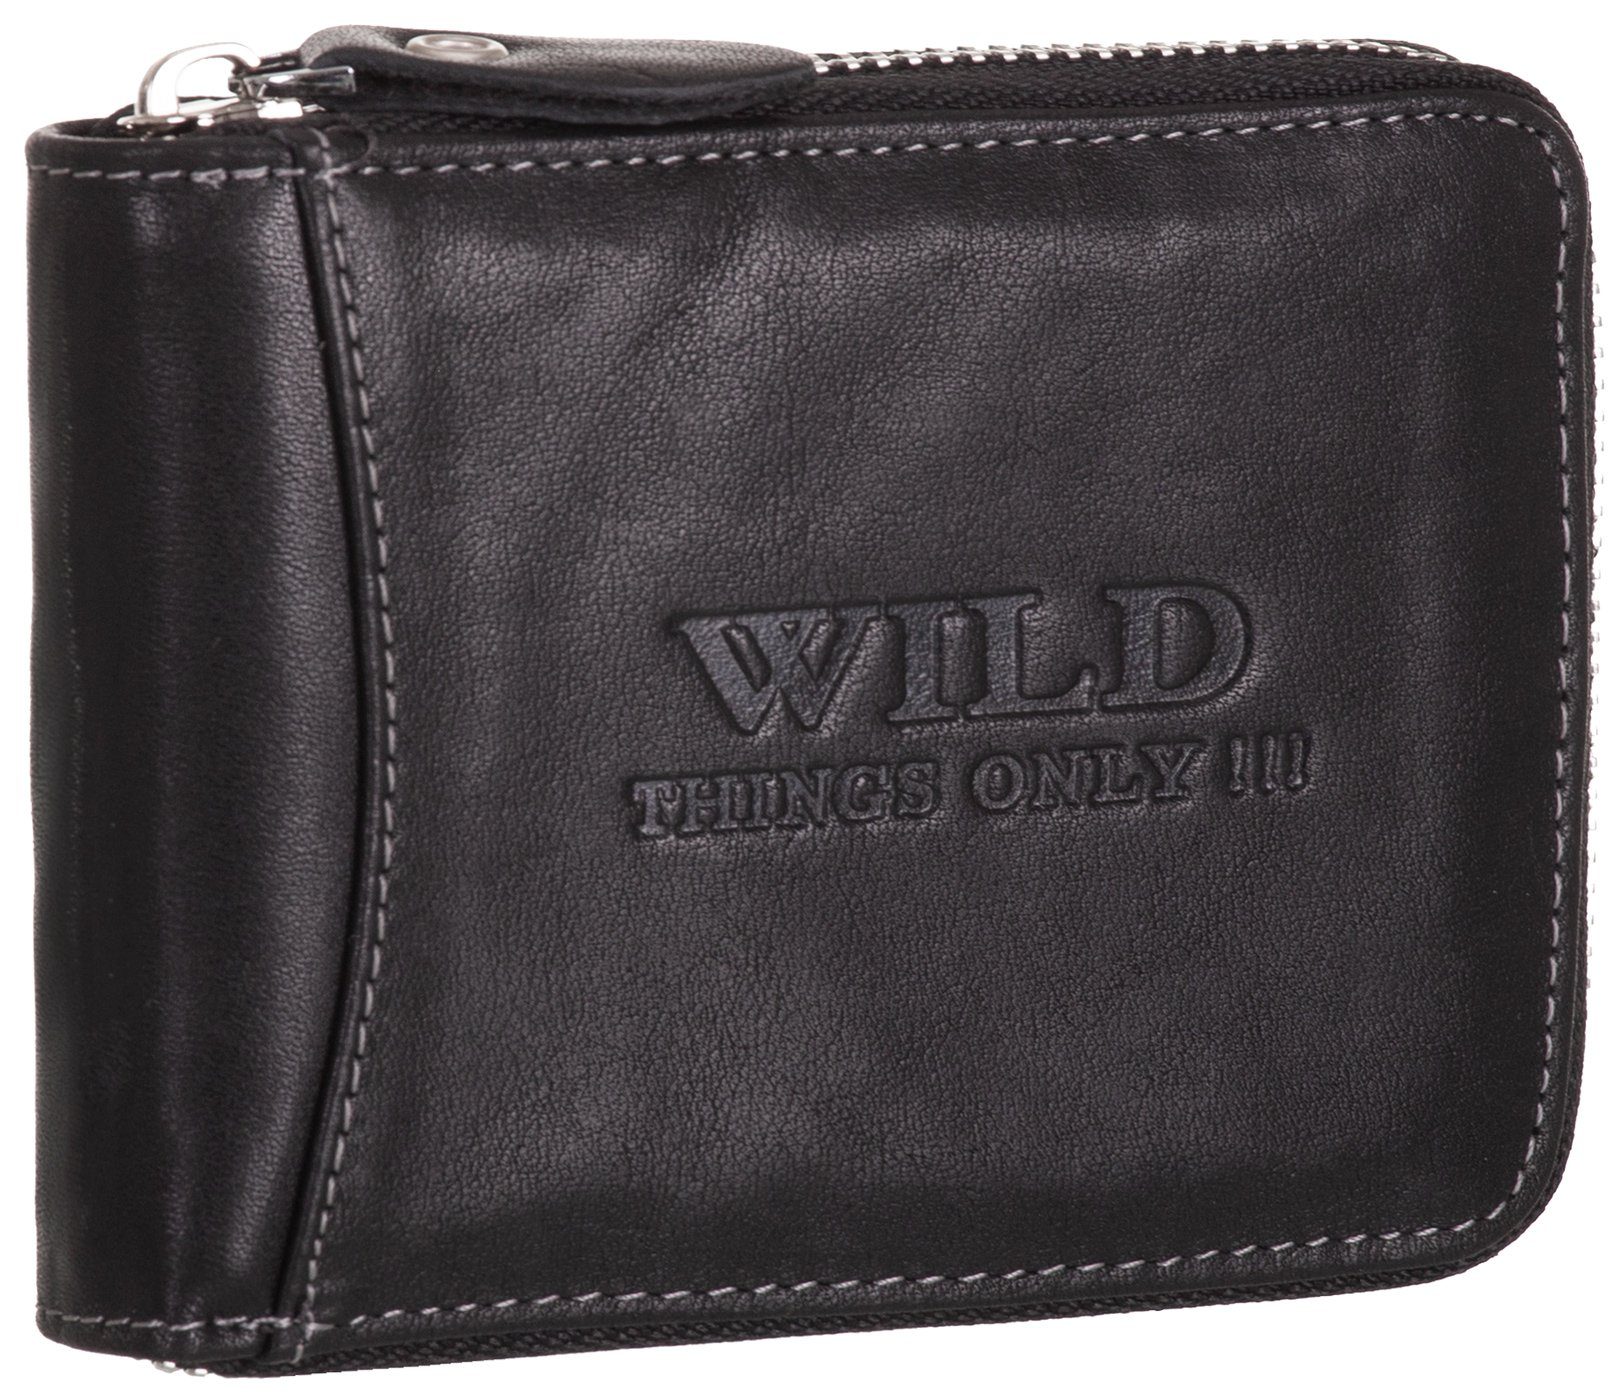 BAG STREET Geldbörse, Geldbörse Echt Leder RFID-Schutz mit Reißverschluss Portemonnaie Geldbeutel schwarz